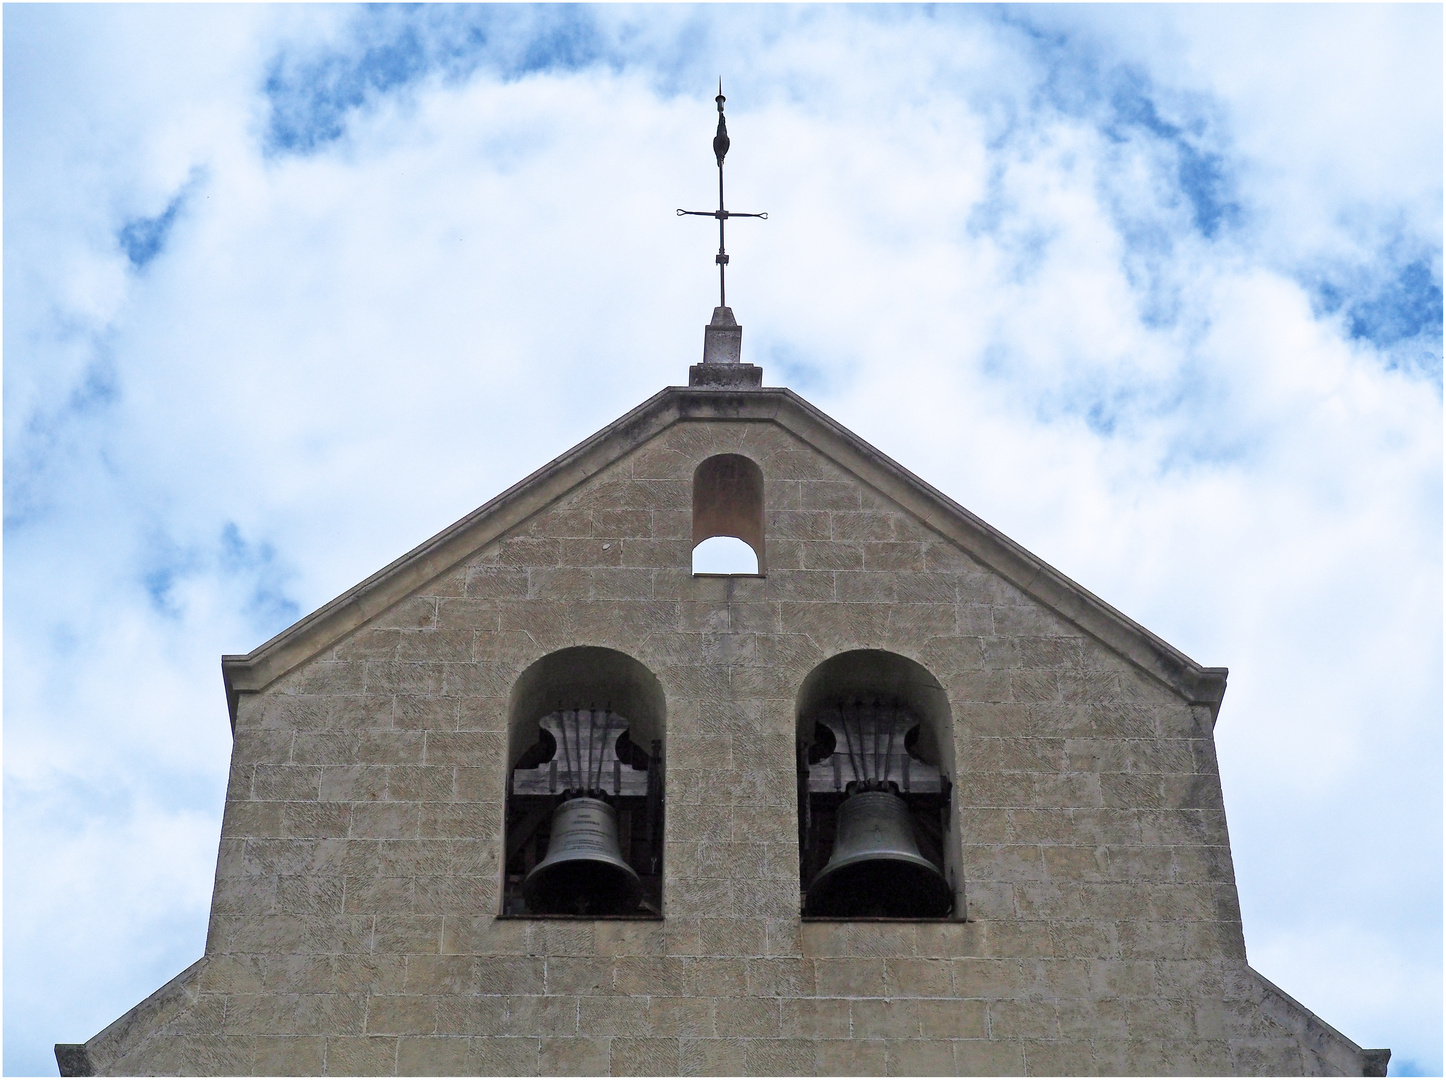 Le clocher de l’Eglise d’Illats